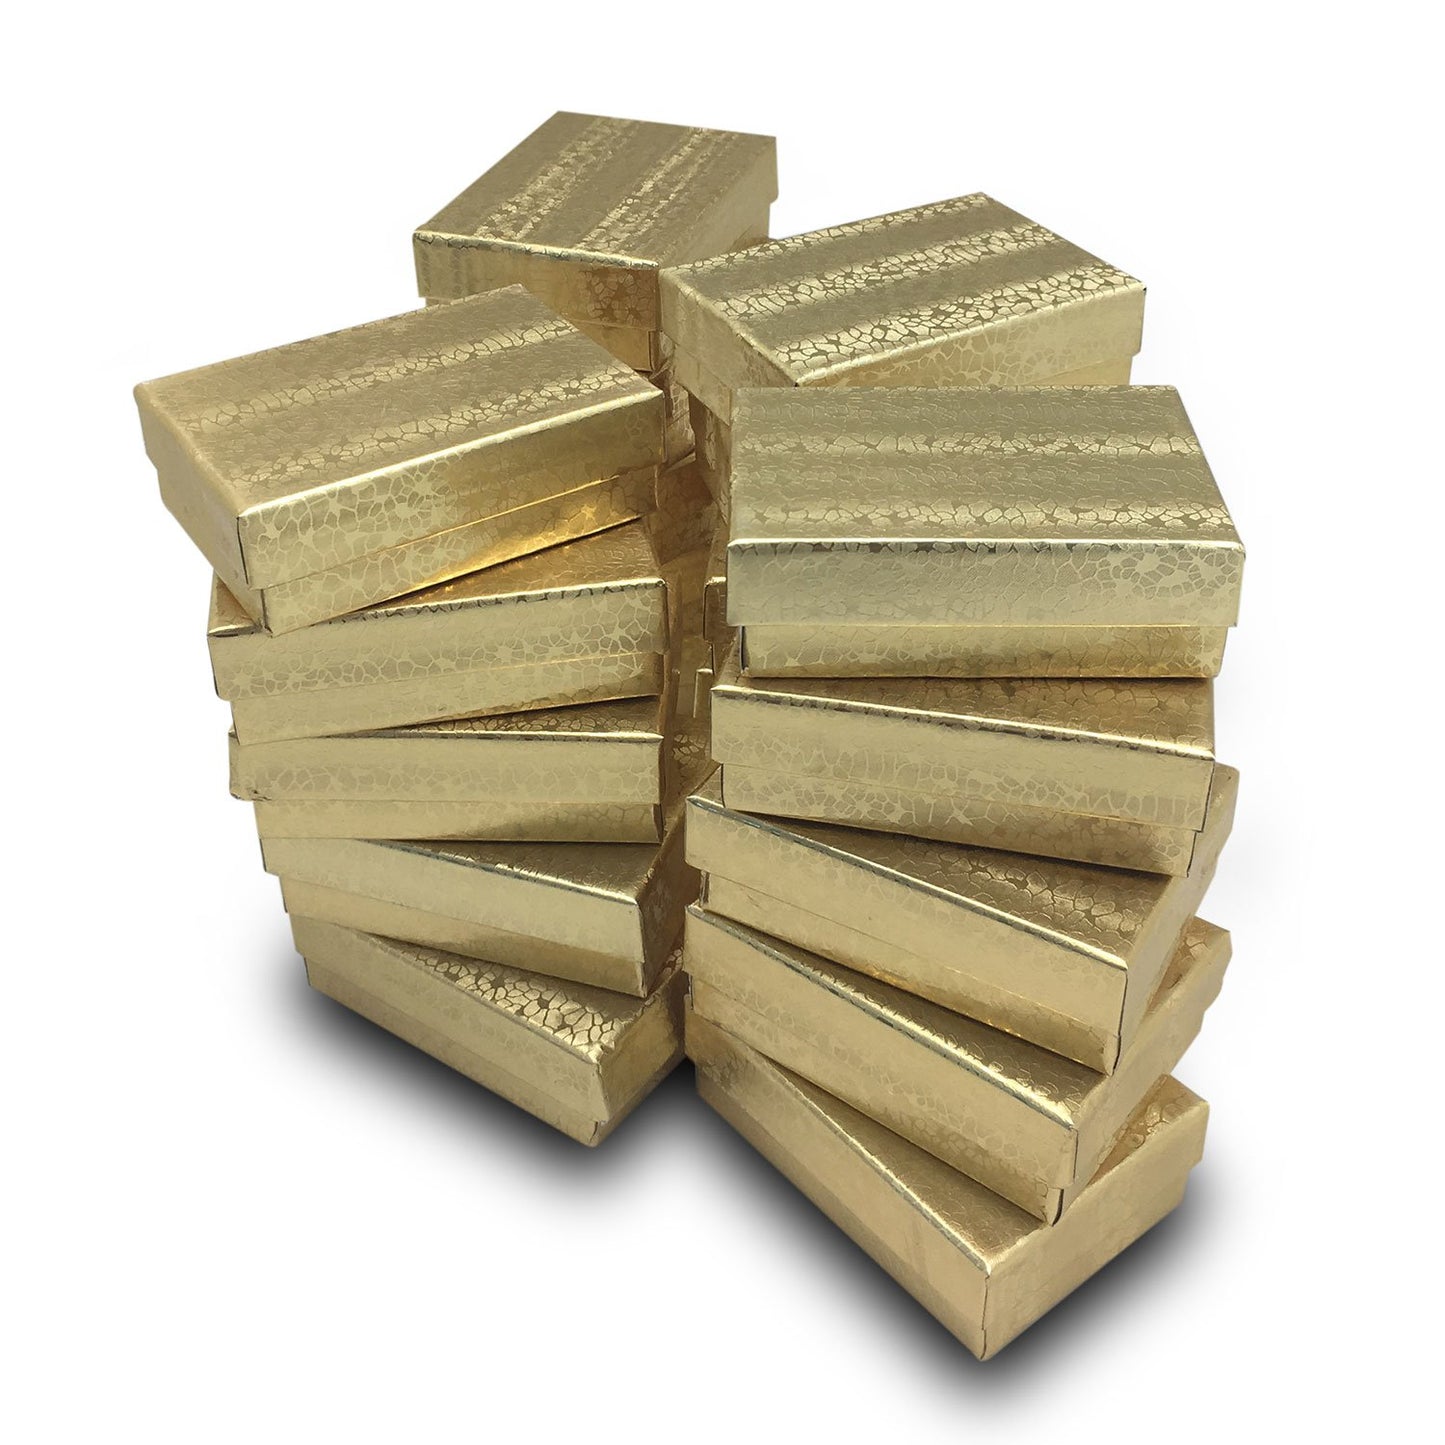 3 1/4" x 2 1/4" x 1" Gold Foil Cotton Filled Paper Box